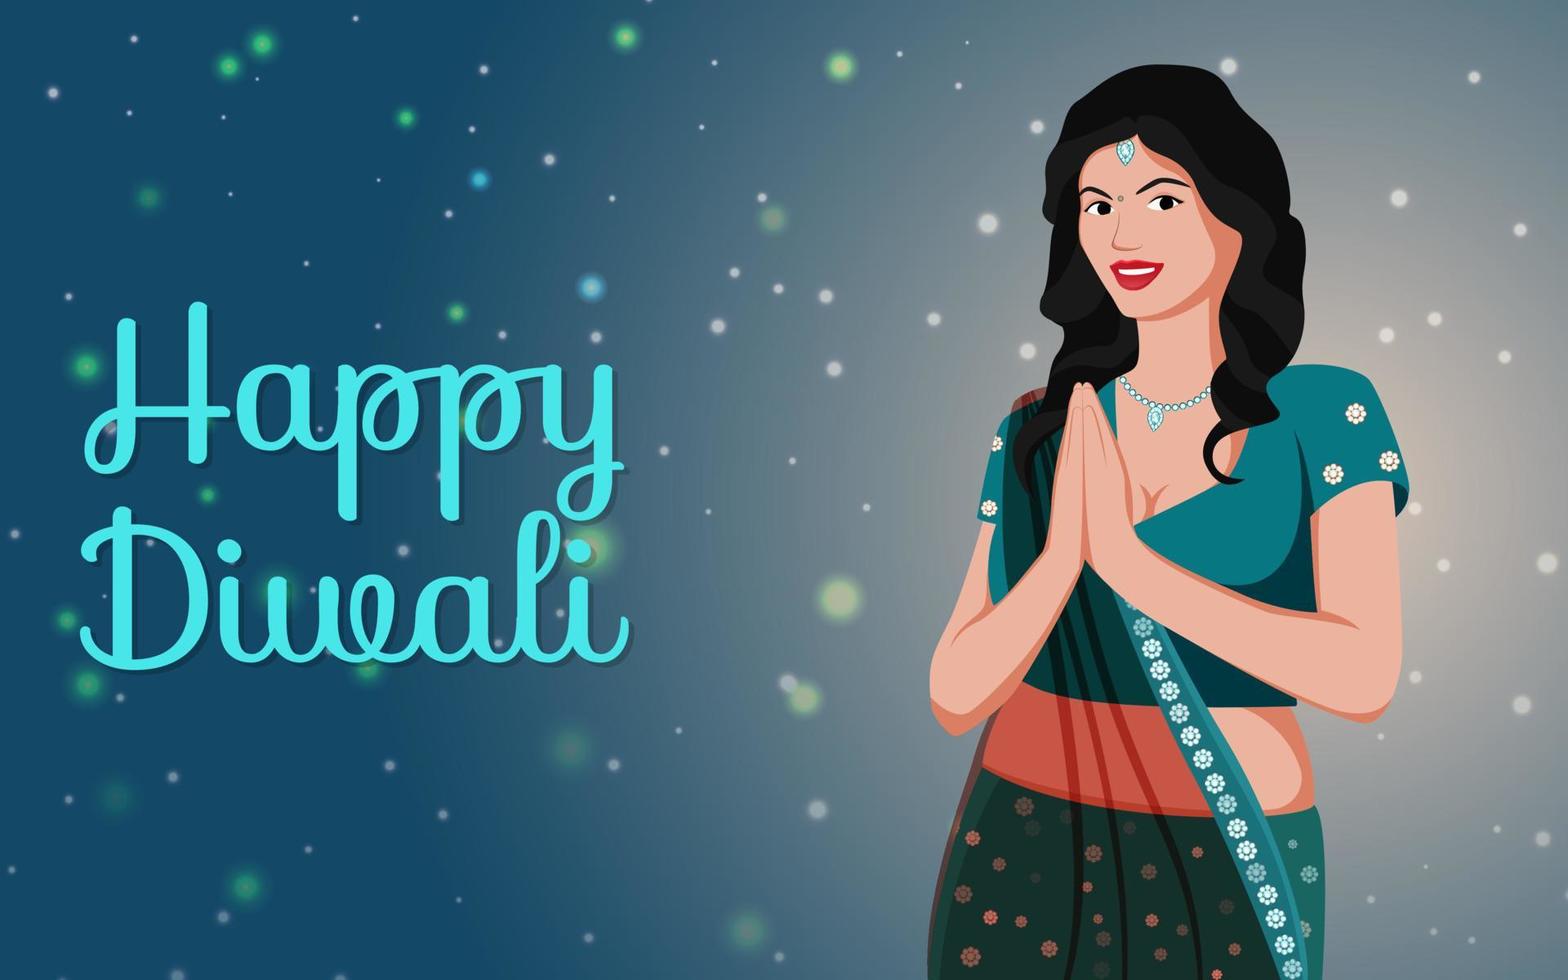 illustrazione vettoriale di una ragazza indiana carina in posa namaste, banner creativo per la celebrazione del diwali per le promozioni sui social media.